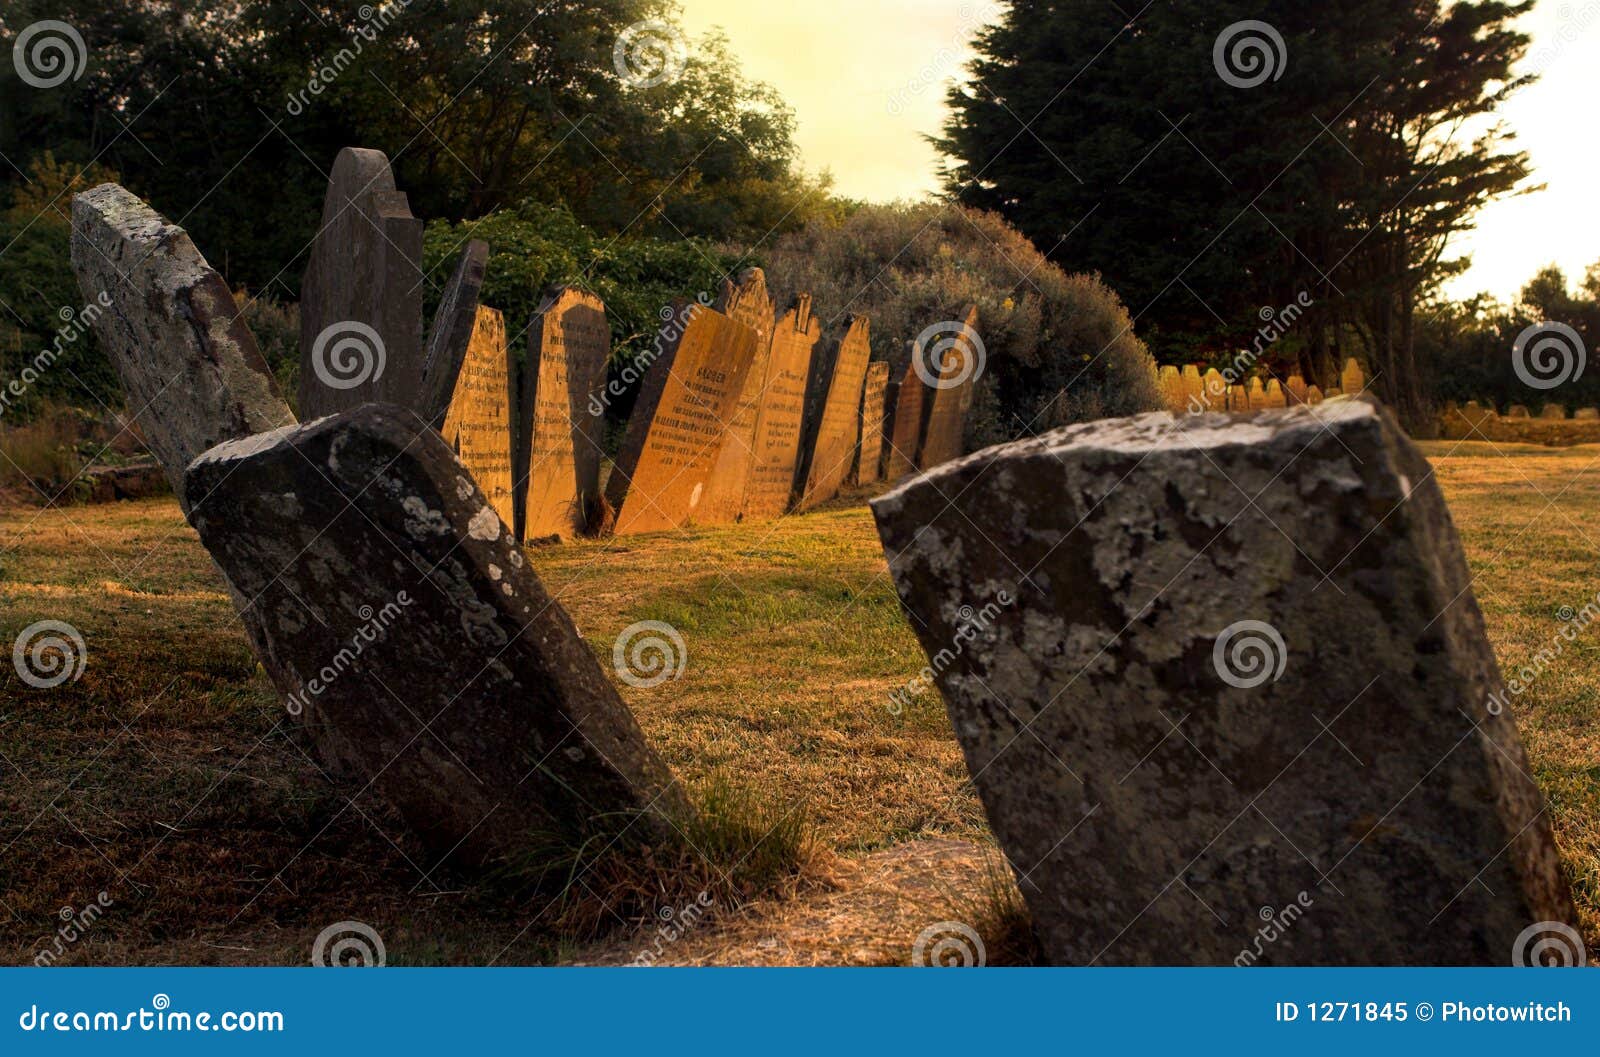 sunset graves